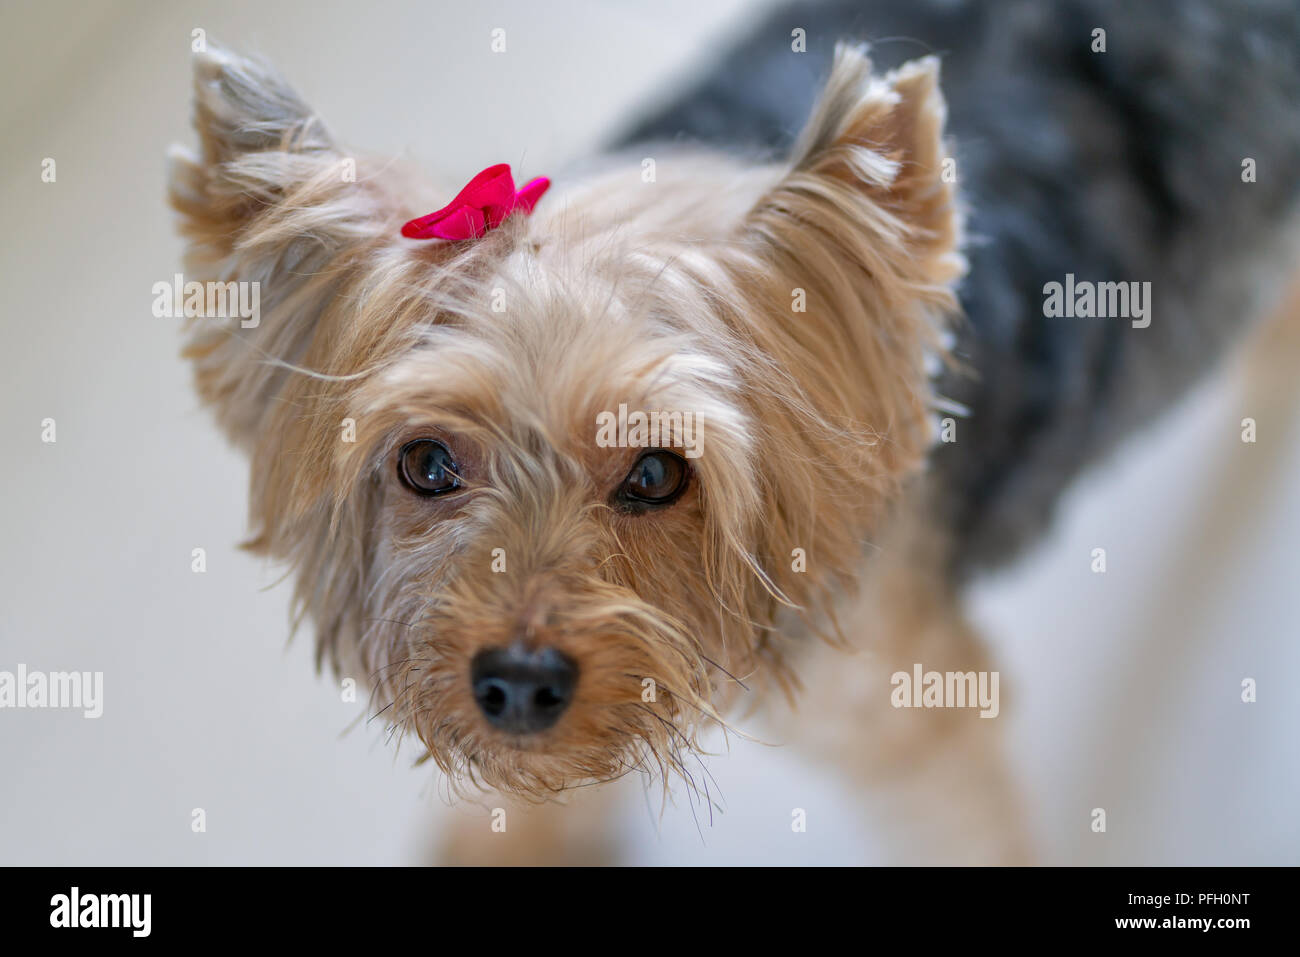 Belle Yorkshire Terrier avec ruban rose, Portrait Banque D'Images